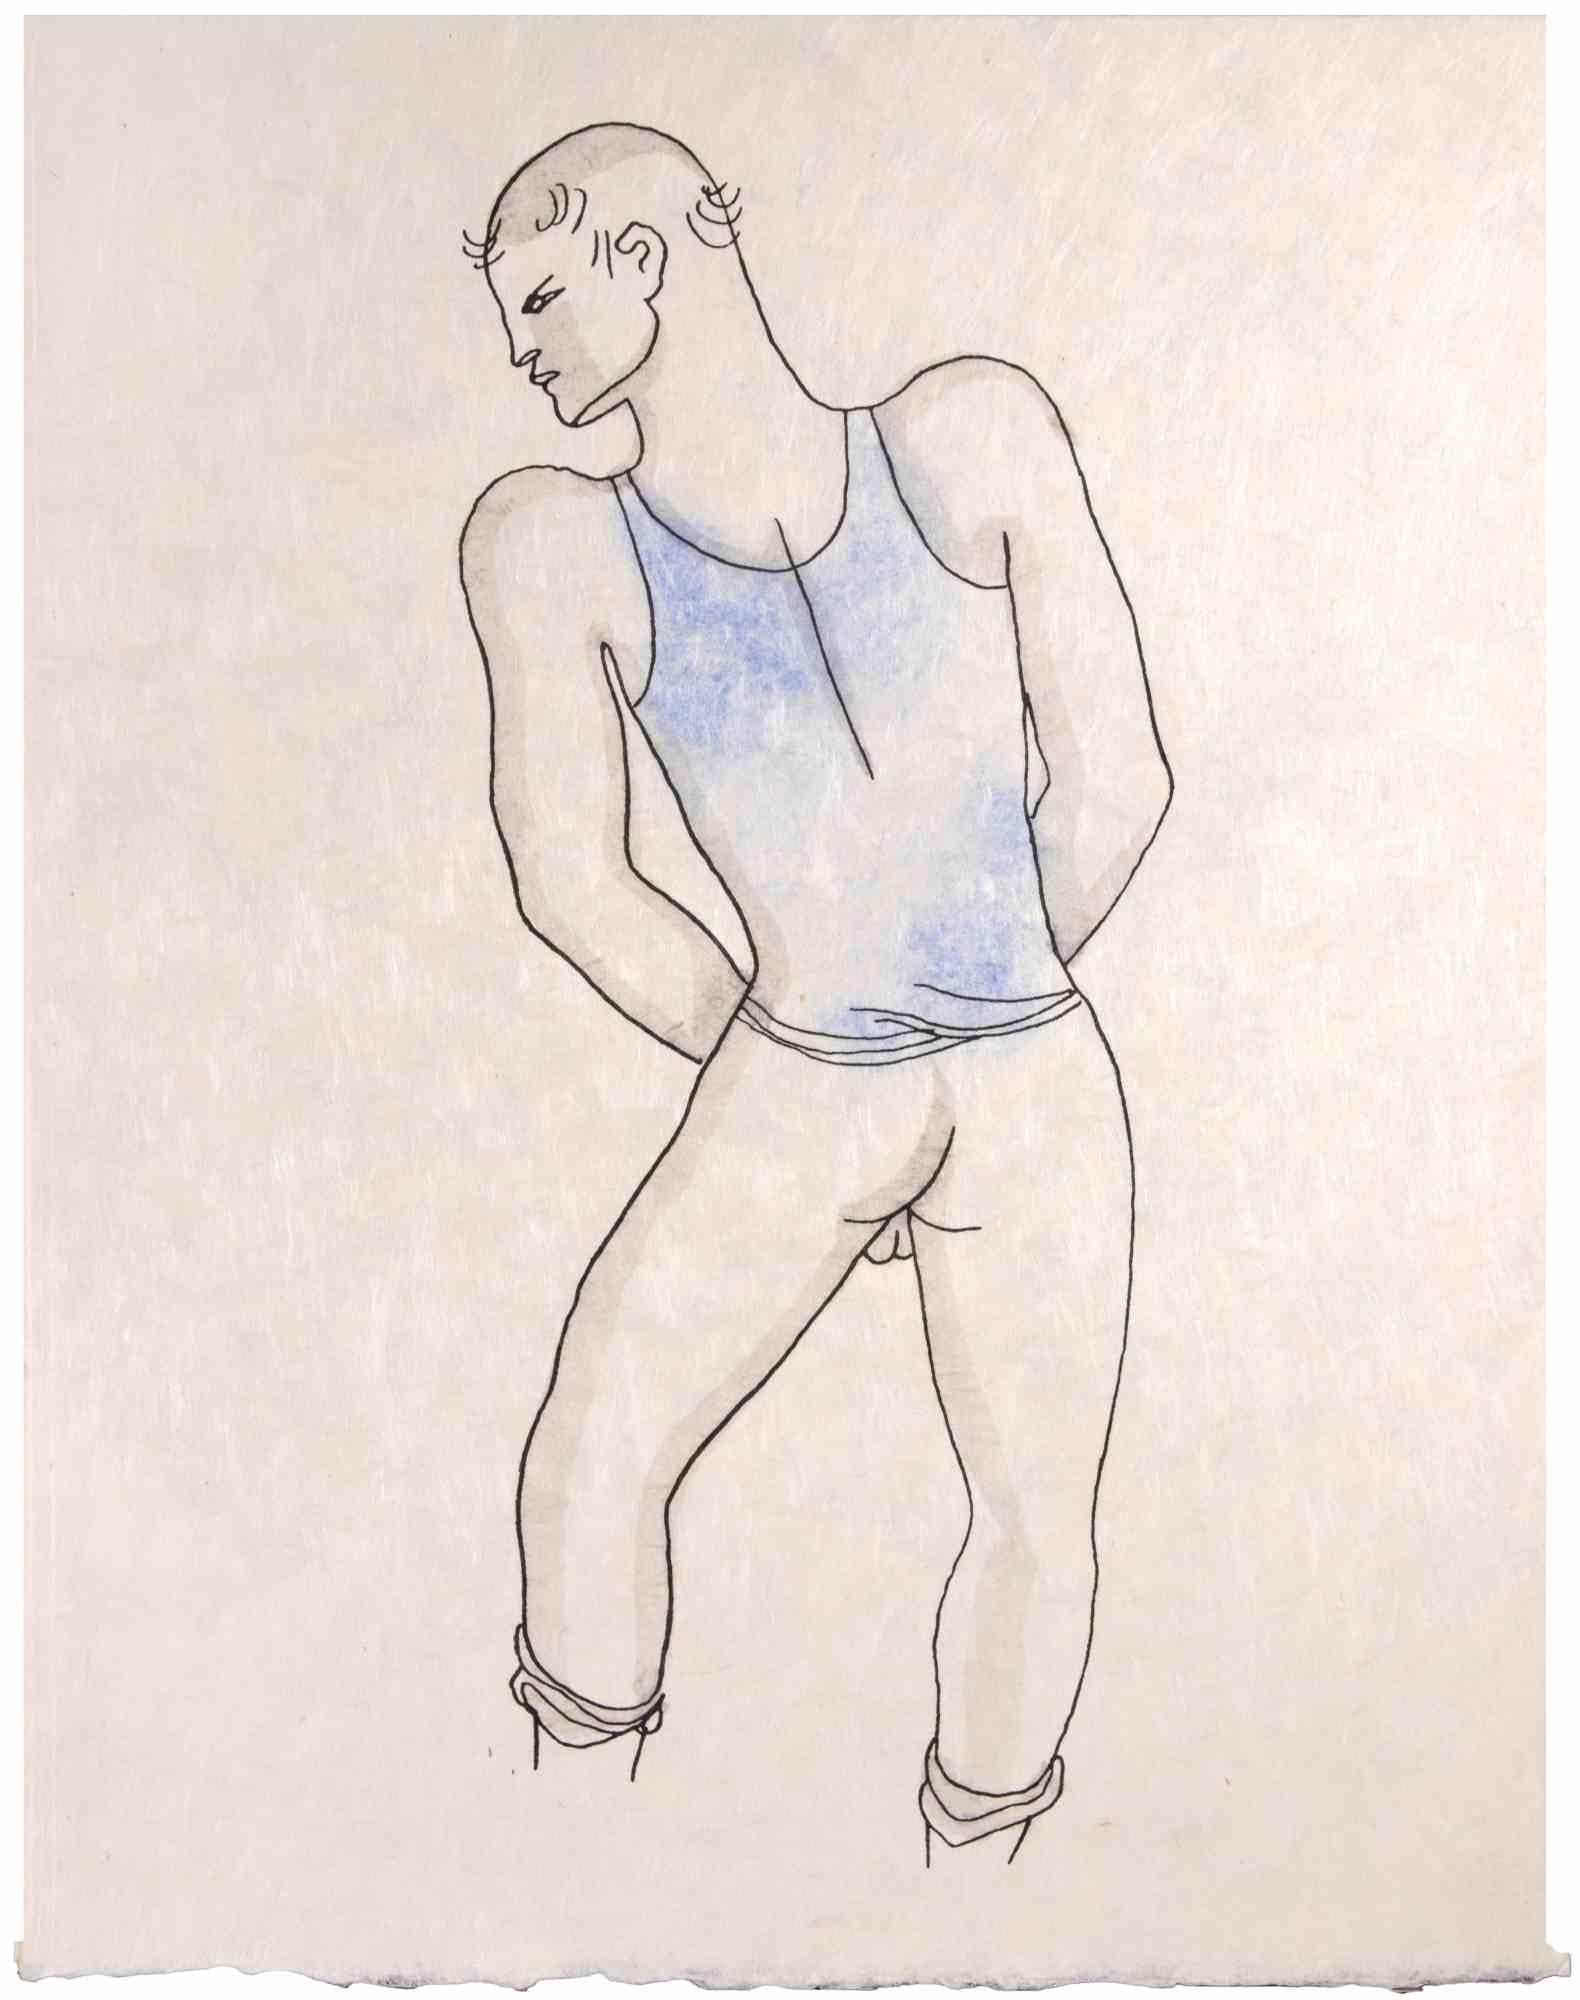 Figur des Menschen ist eine kolorierte Lithographie auf Japanpapier von Jean Cocteau (1889 -1963) aus dem Jahr 1930. 

Französischer Zeichner, Dichter, Essayist, Dramatiker, Librettist, Filmregisseur.

Ausgezeichneter Zustand, keine Signatur.

Das